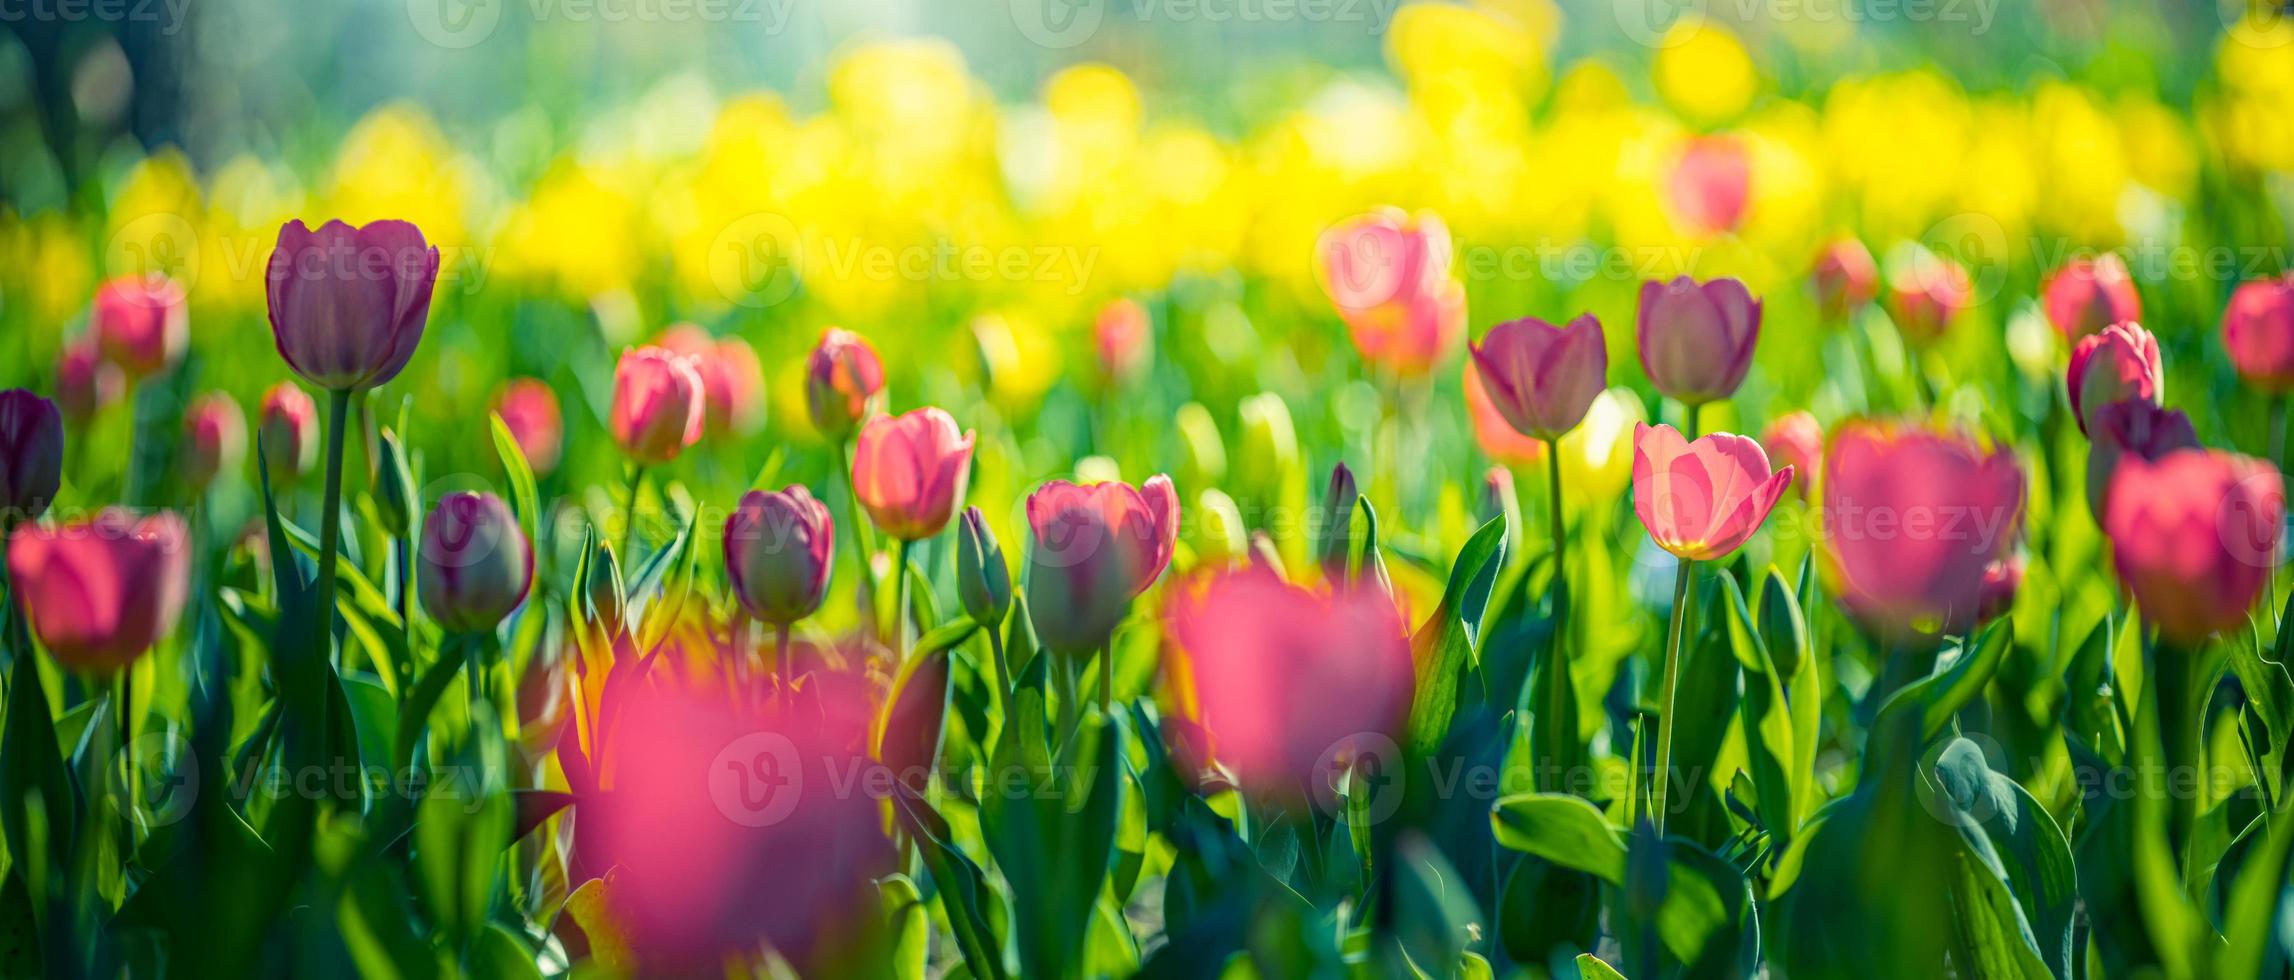 closeup natureza vista de incríveis tulipas rosa vermelhas florescendo no jardim. flores da primavera sob a luz do sol. paisagem natural de plantas de flores ensolaradas e folhagem romântica turva. bandeira de natureza panorâmica serena foto